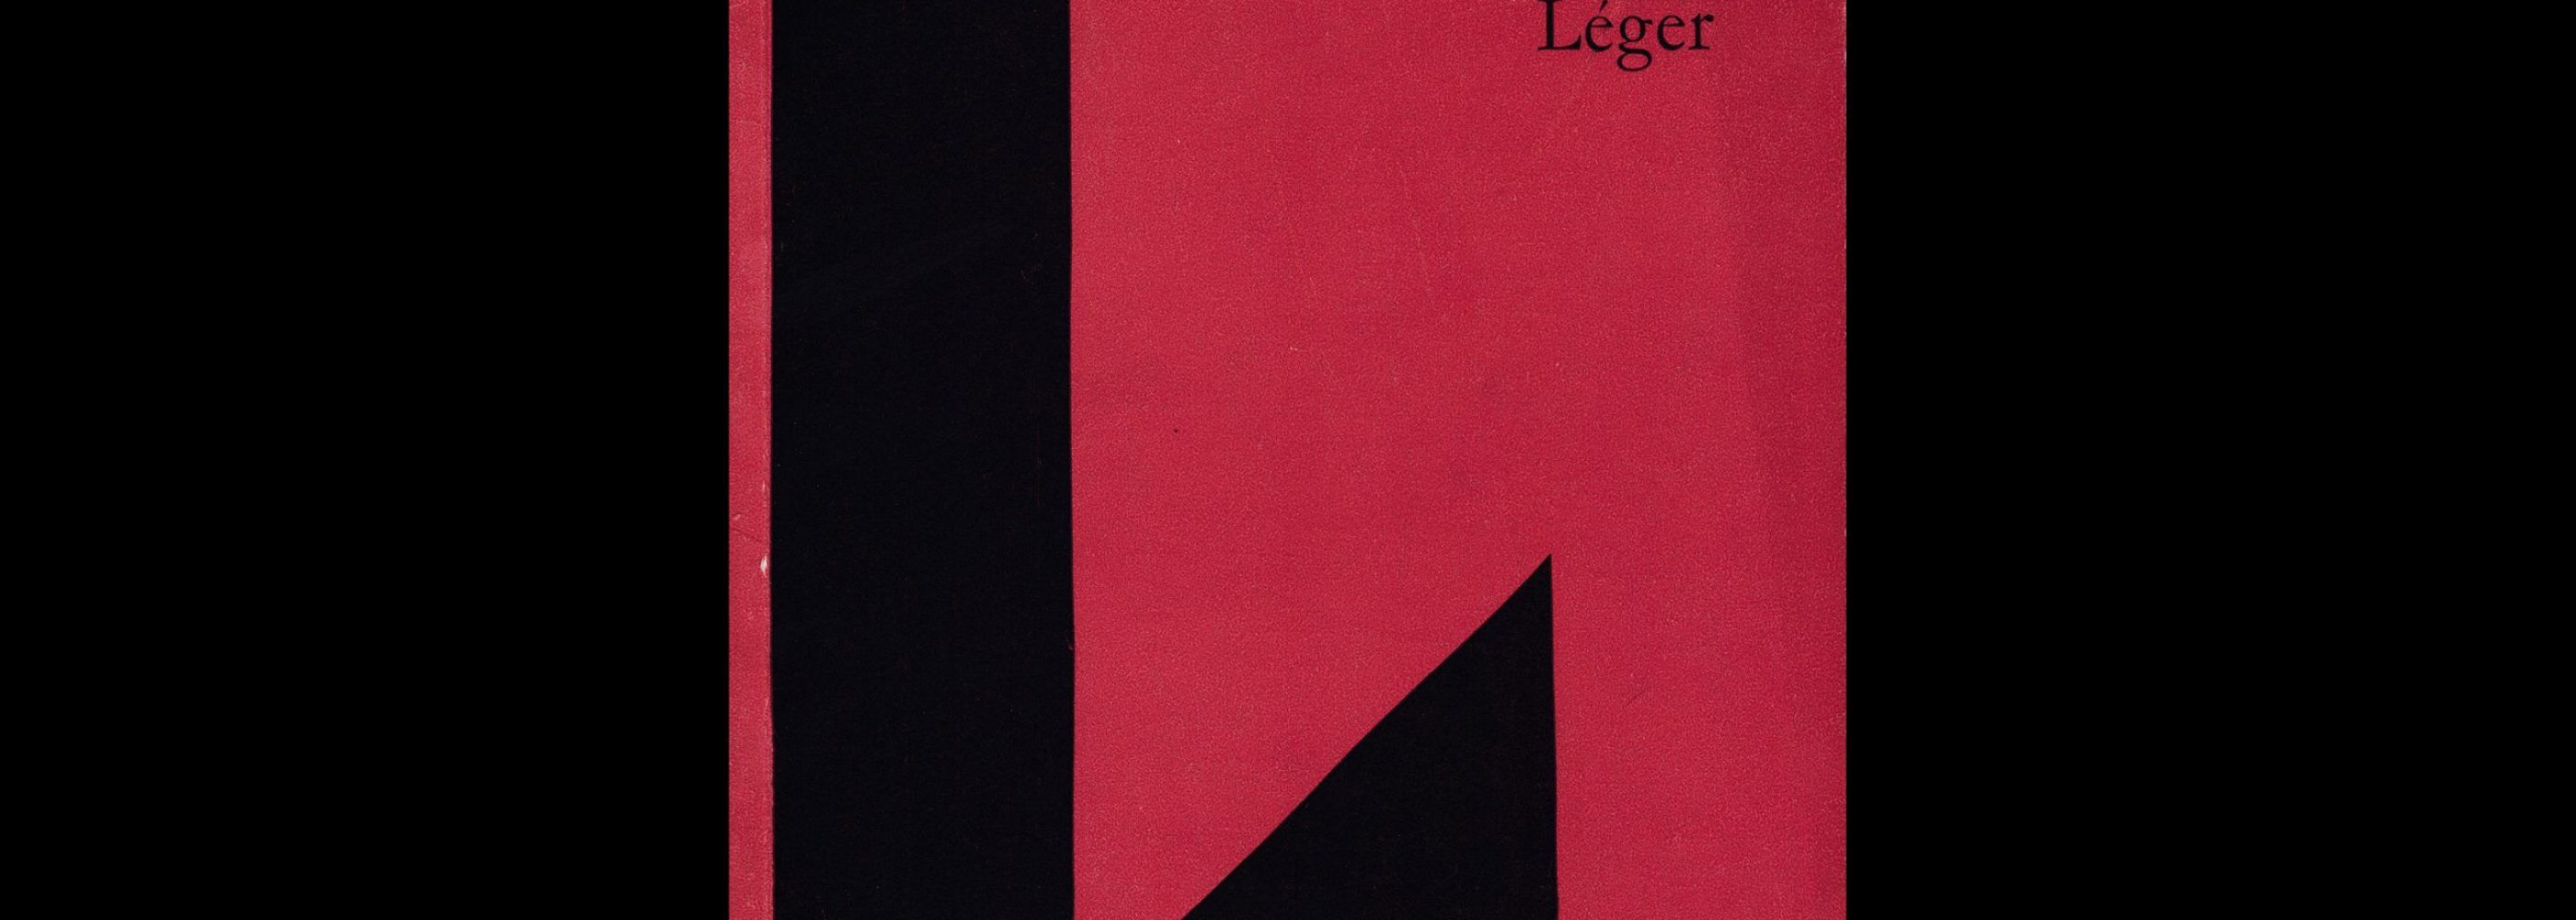 Fernand Leger, Kunsthalle Basel, 1957 designed by Armin Hofmann